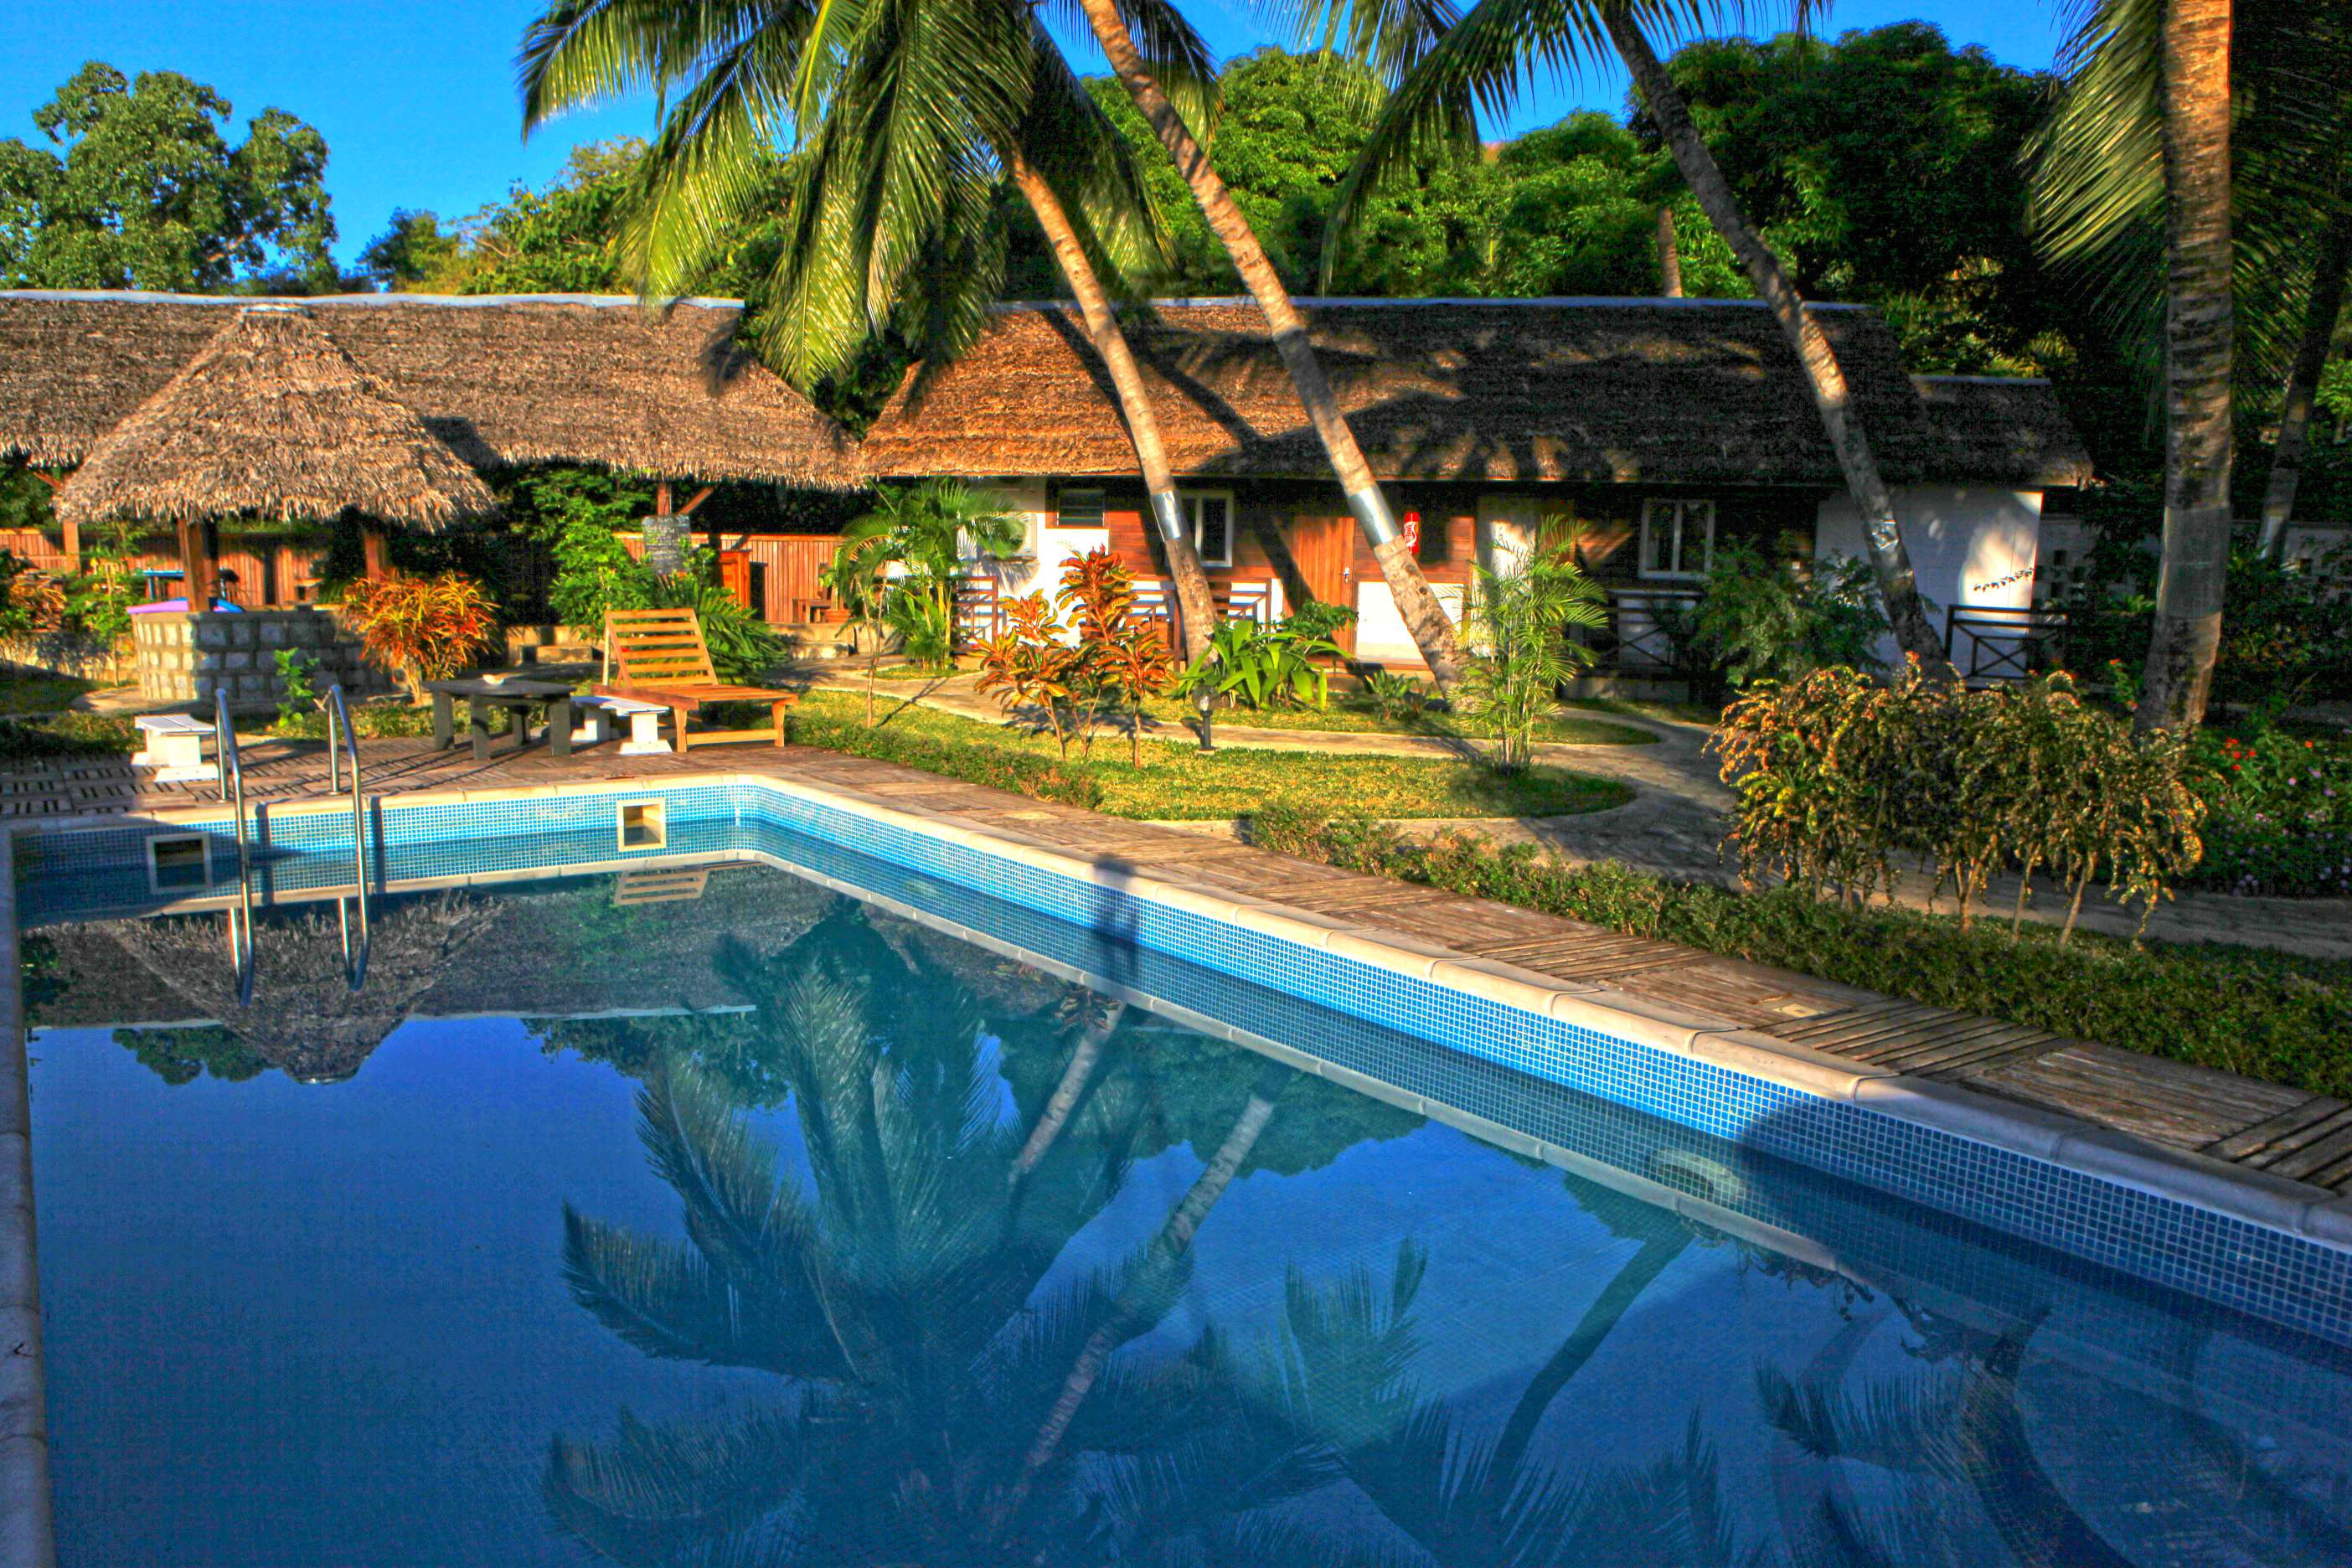 A Louer, 4 bungalows doubles  pieds dans l'eau avec piscine et salle de fitness